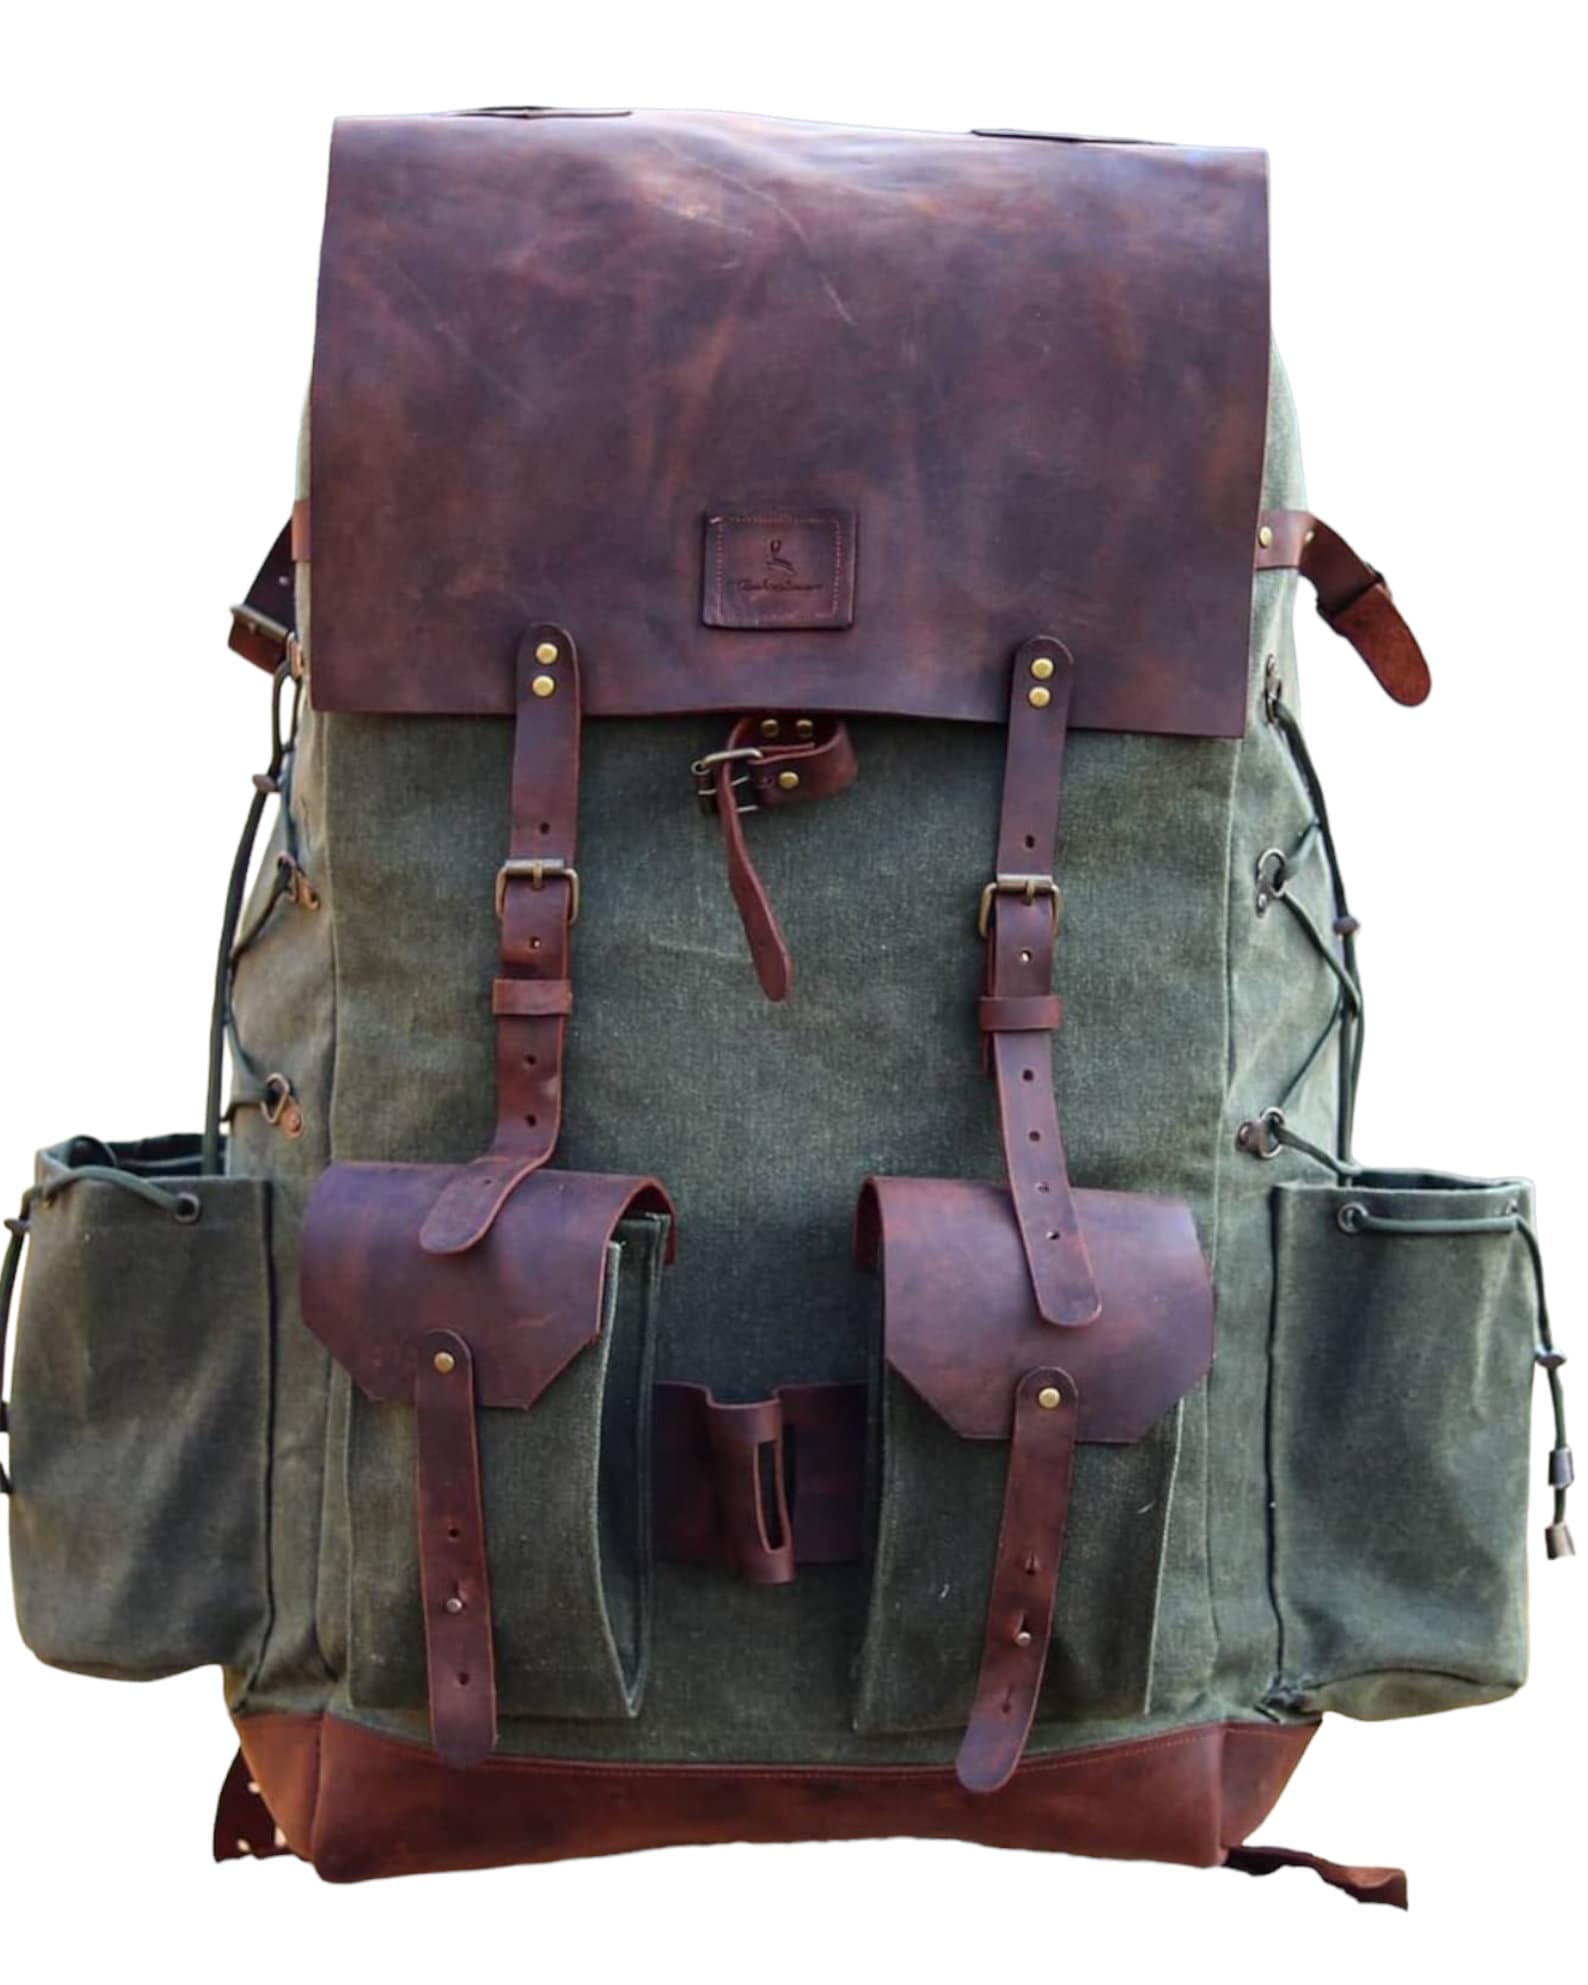 Hiking | Leather Flap | Hiking Backpack | Hiking Bag | Leather Canvas Backpack | Leather | Canvas | Camping Backpack | Camping | Rucksack bushcraft - camping - hiking backpack 99percenthandmade   